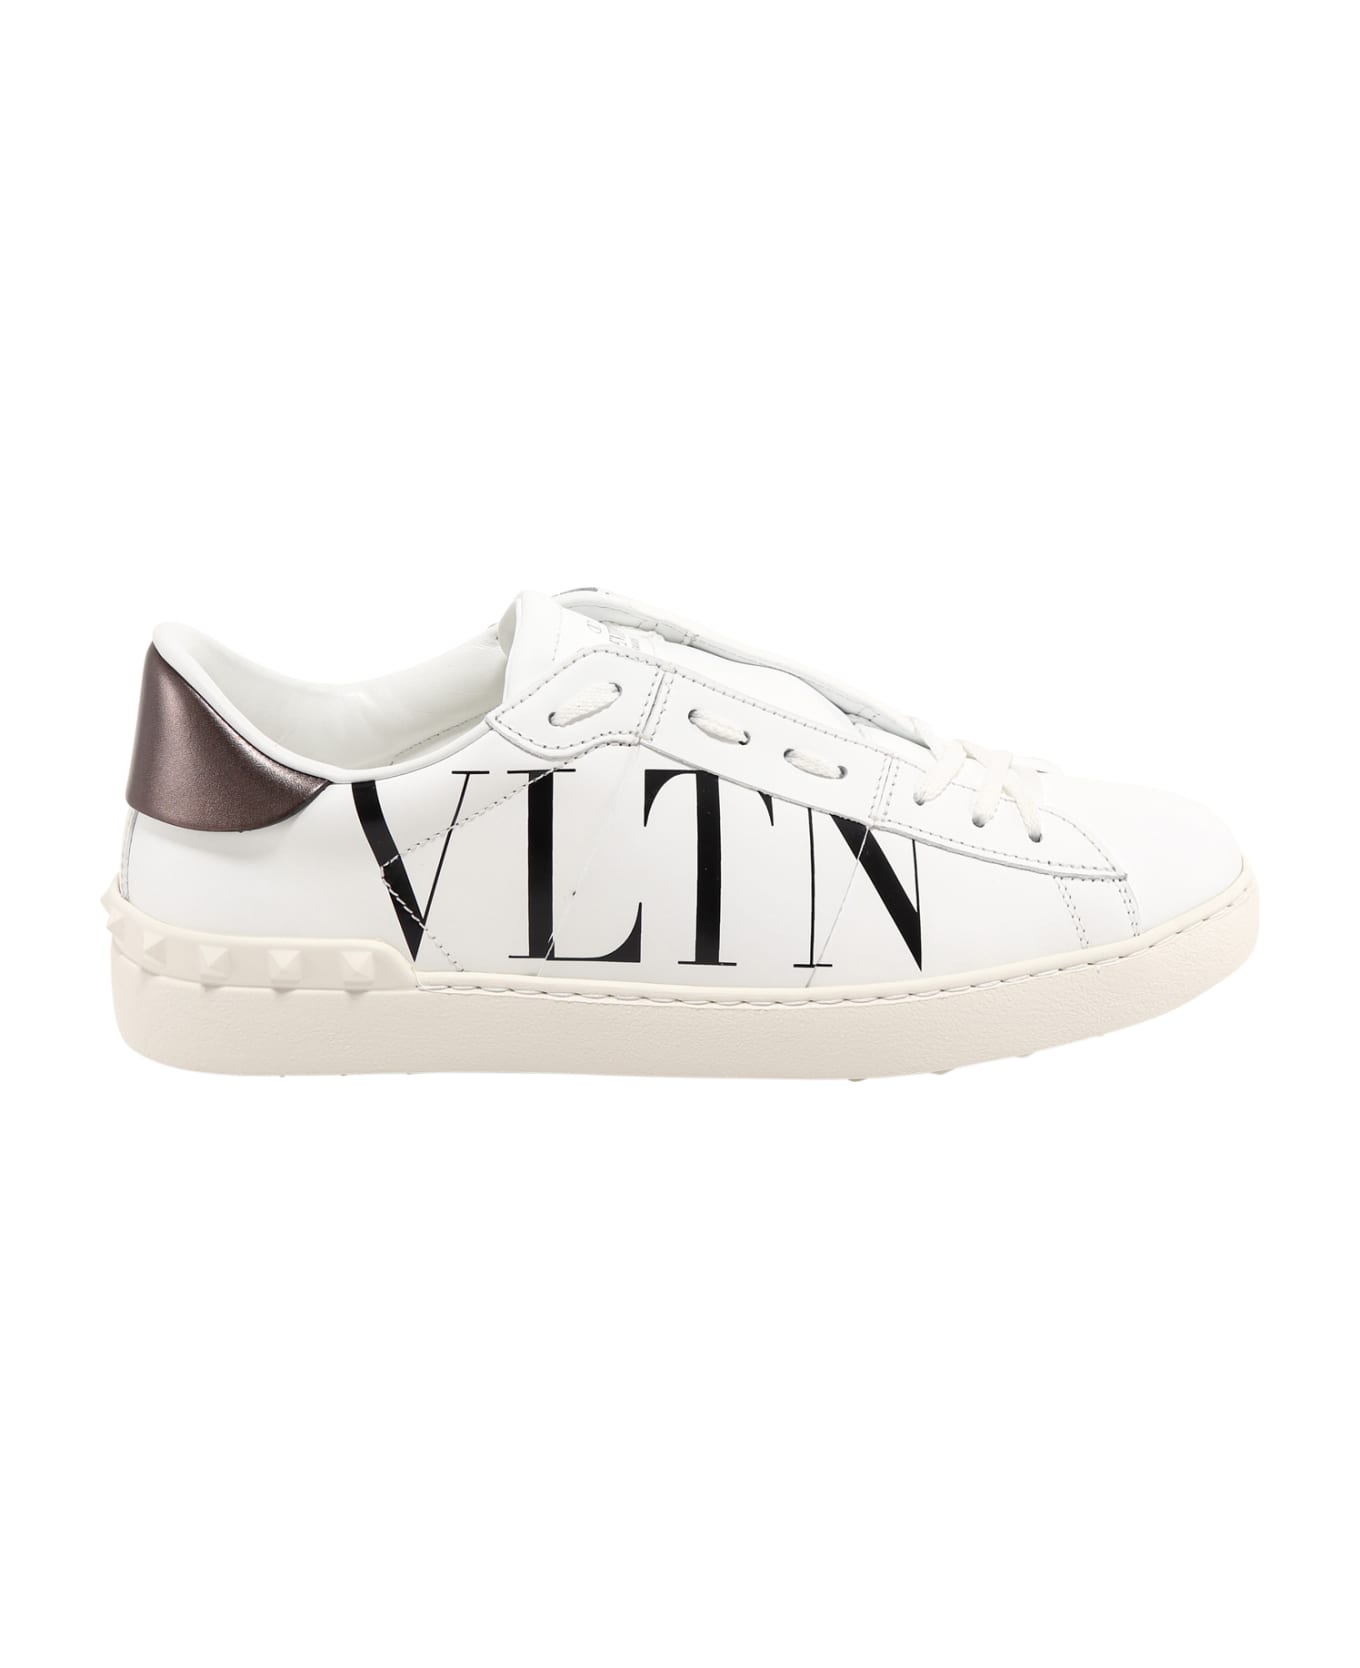 Valentino Garavani White 'open' Sneakers Vltn - White スニーカー